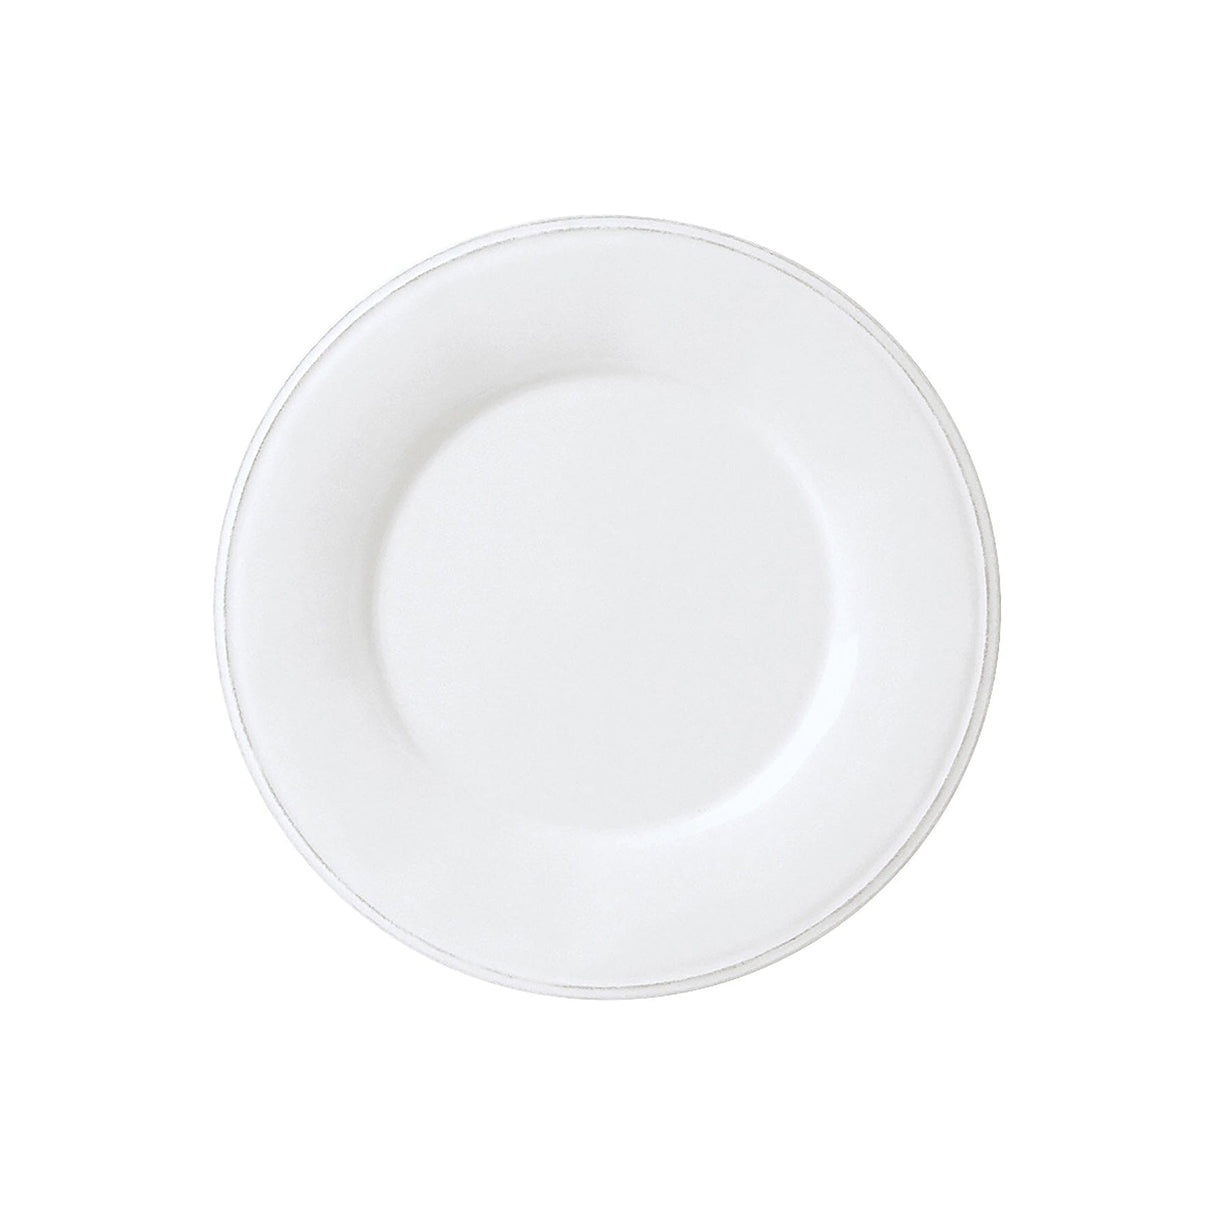 Piatto in ceramica Piatto Cote Table da Dessert Bianco 